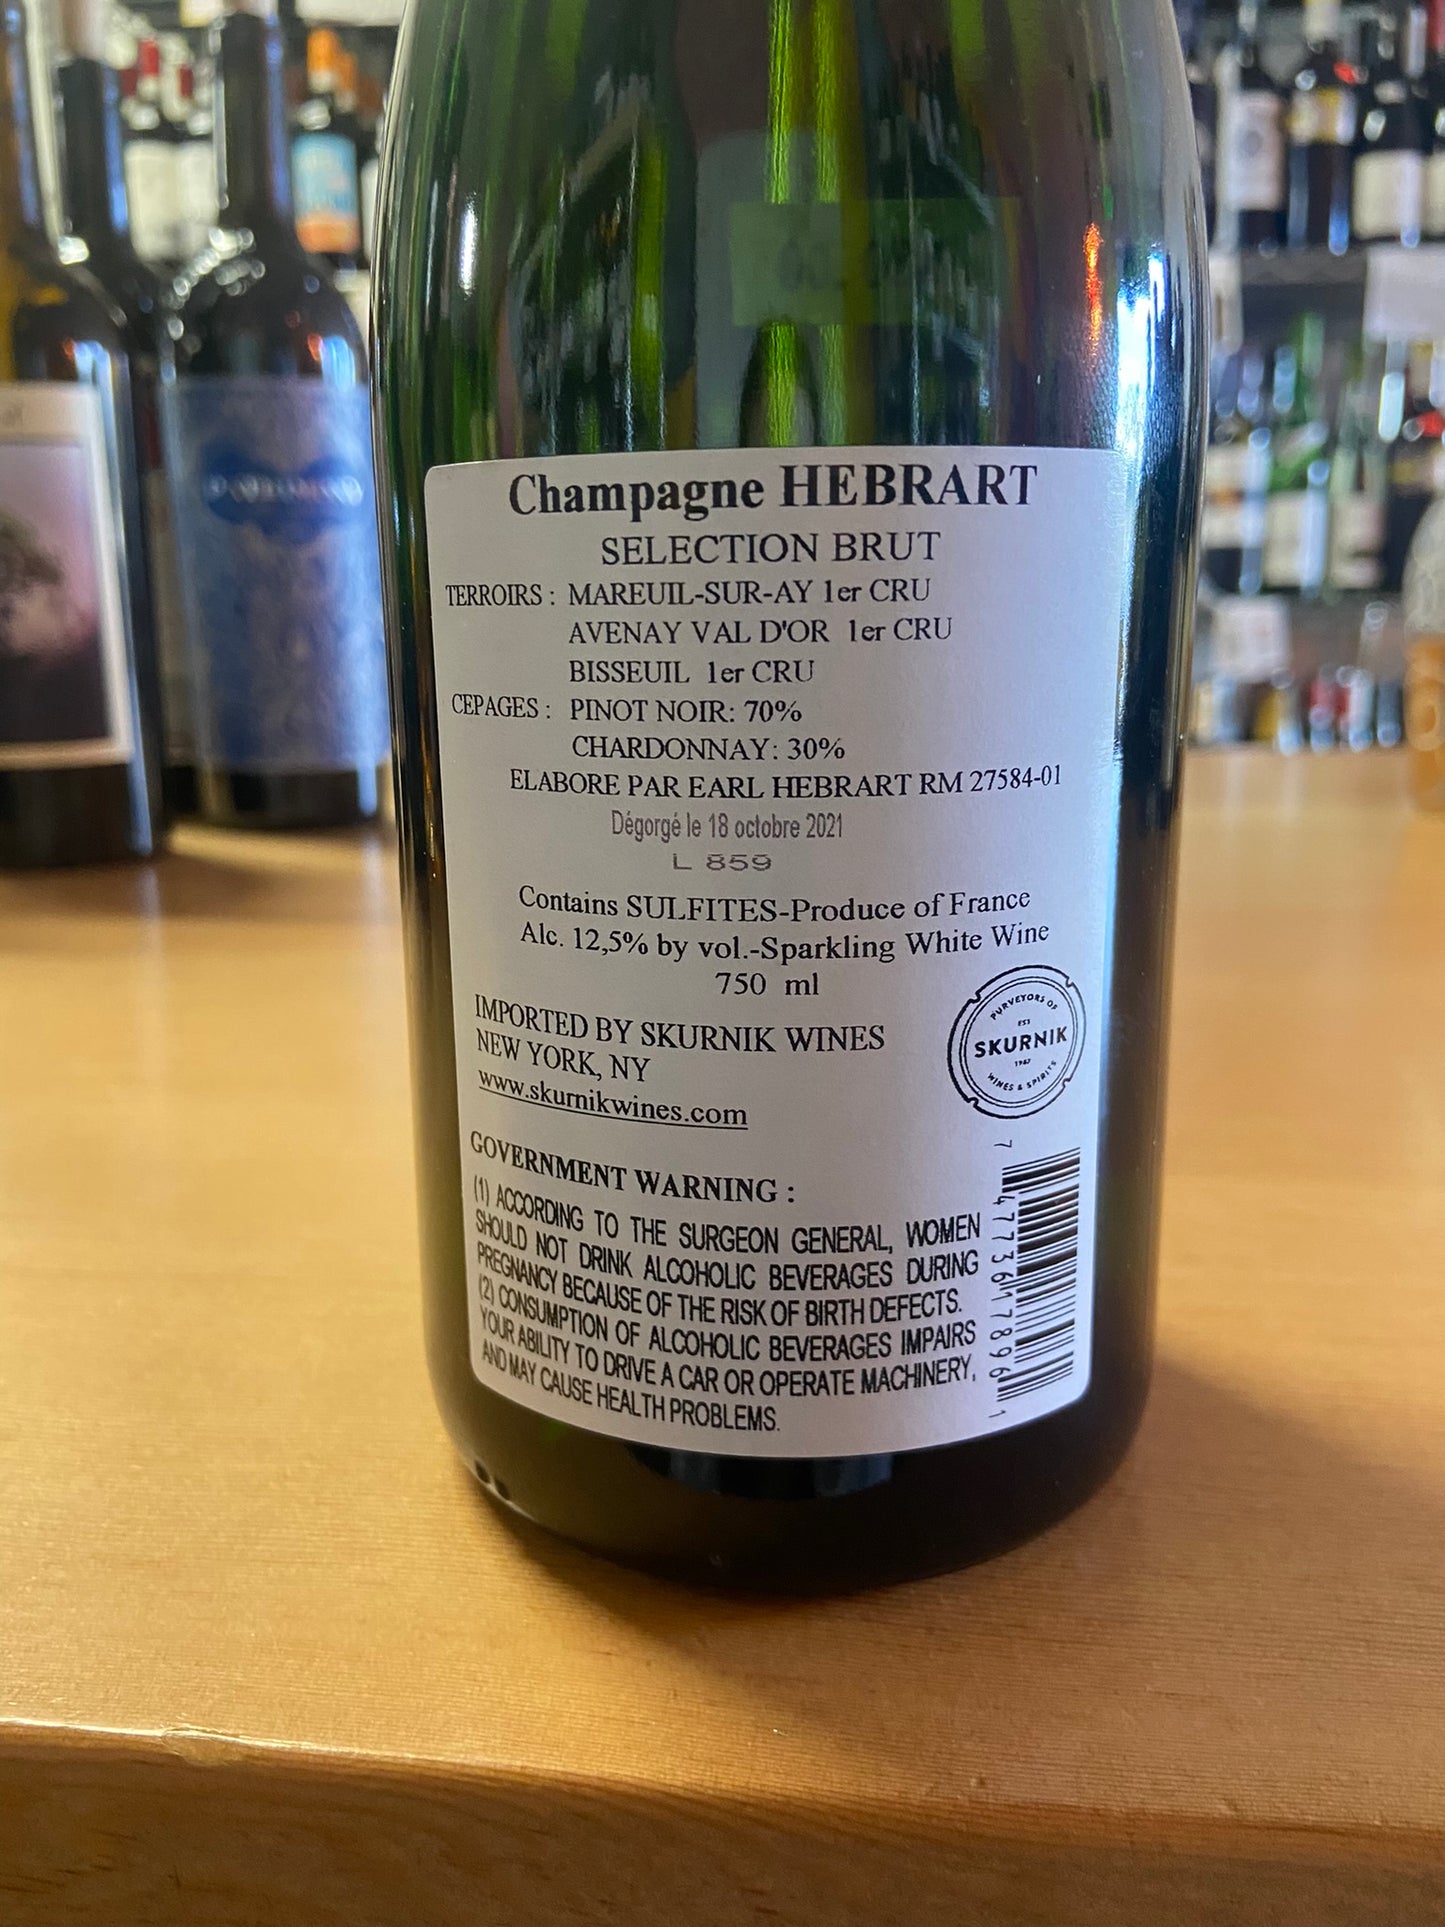 MARC HEBRART NV Champagne 'Premier Cru Selection Brut' (Champagne, France)